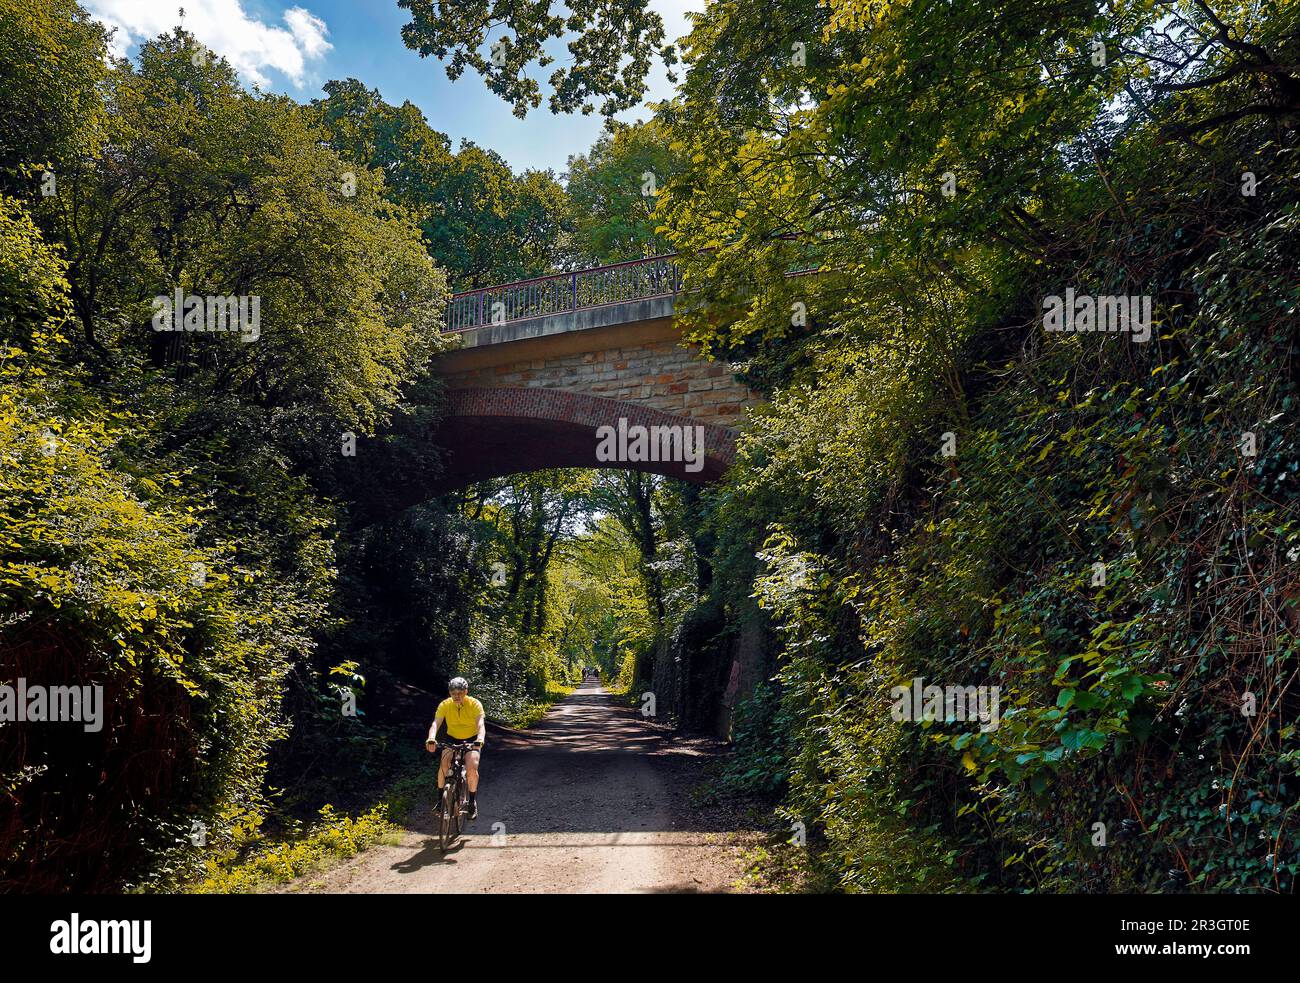 Ponte sulla pista ciclabile Rheinischer Esel con ciclisti, Dortmund, Ruhr, Germania, Europa Foto Stock